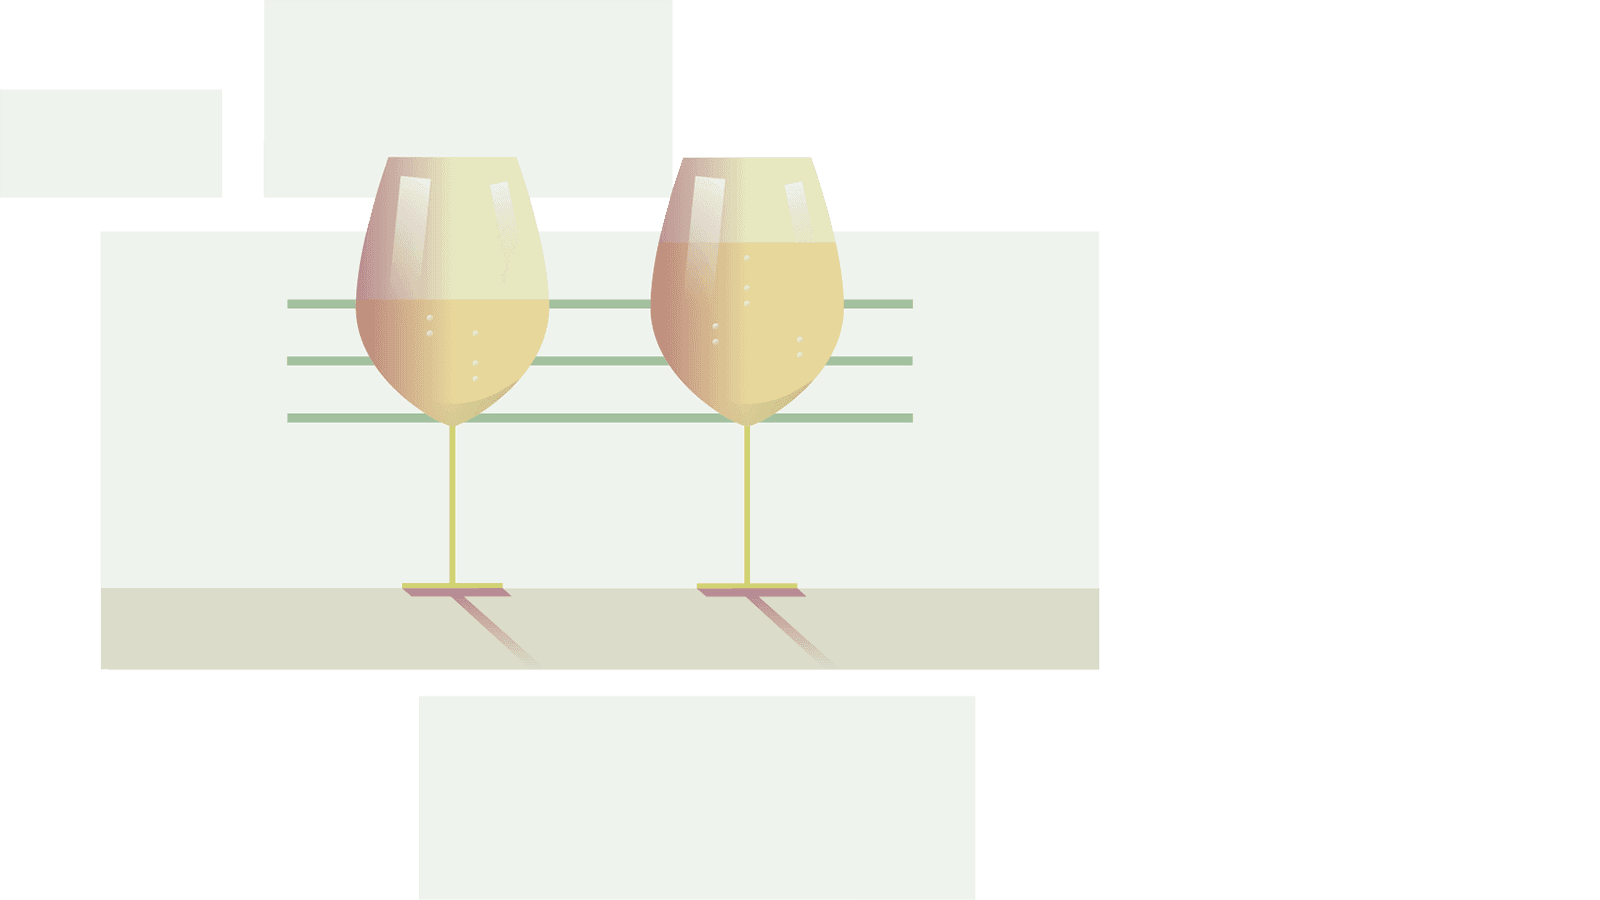 Imagen gráfica de dos copas de vino Uno con poca cantidad y otro con mucha cantidad de vino.